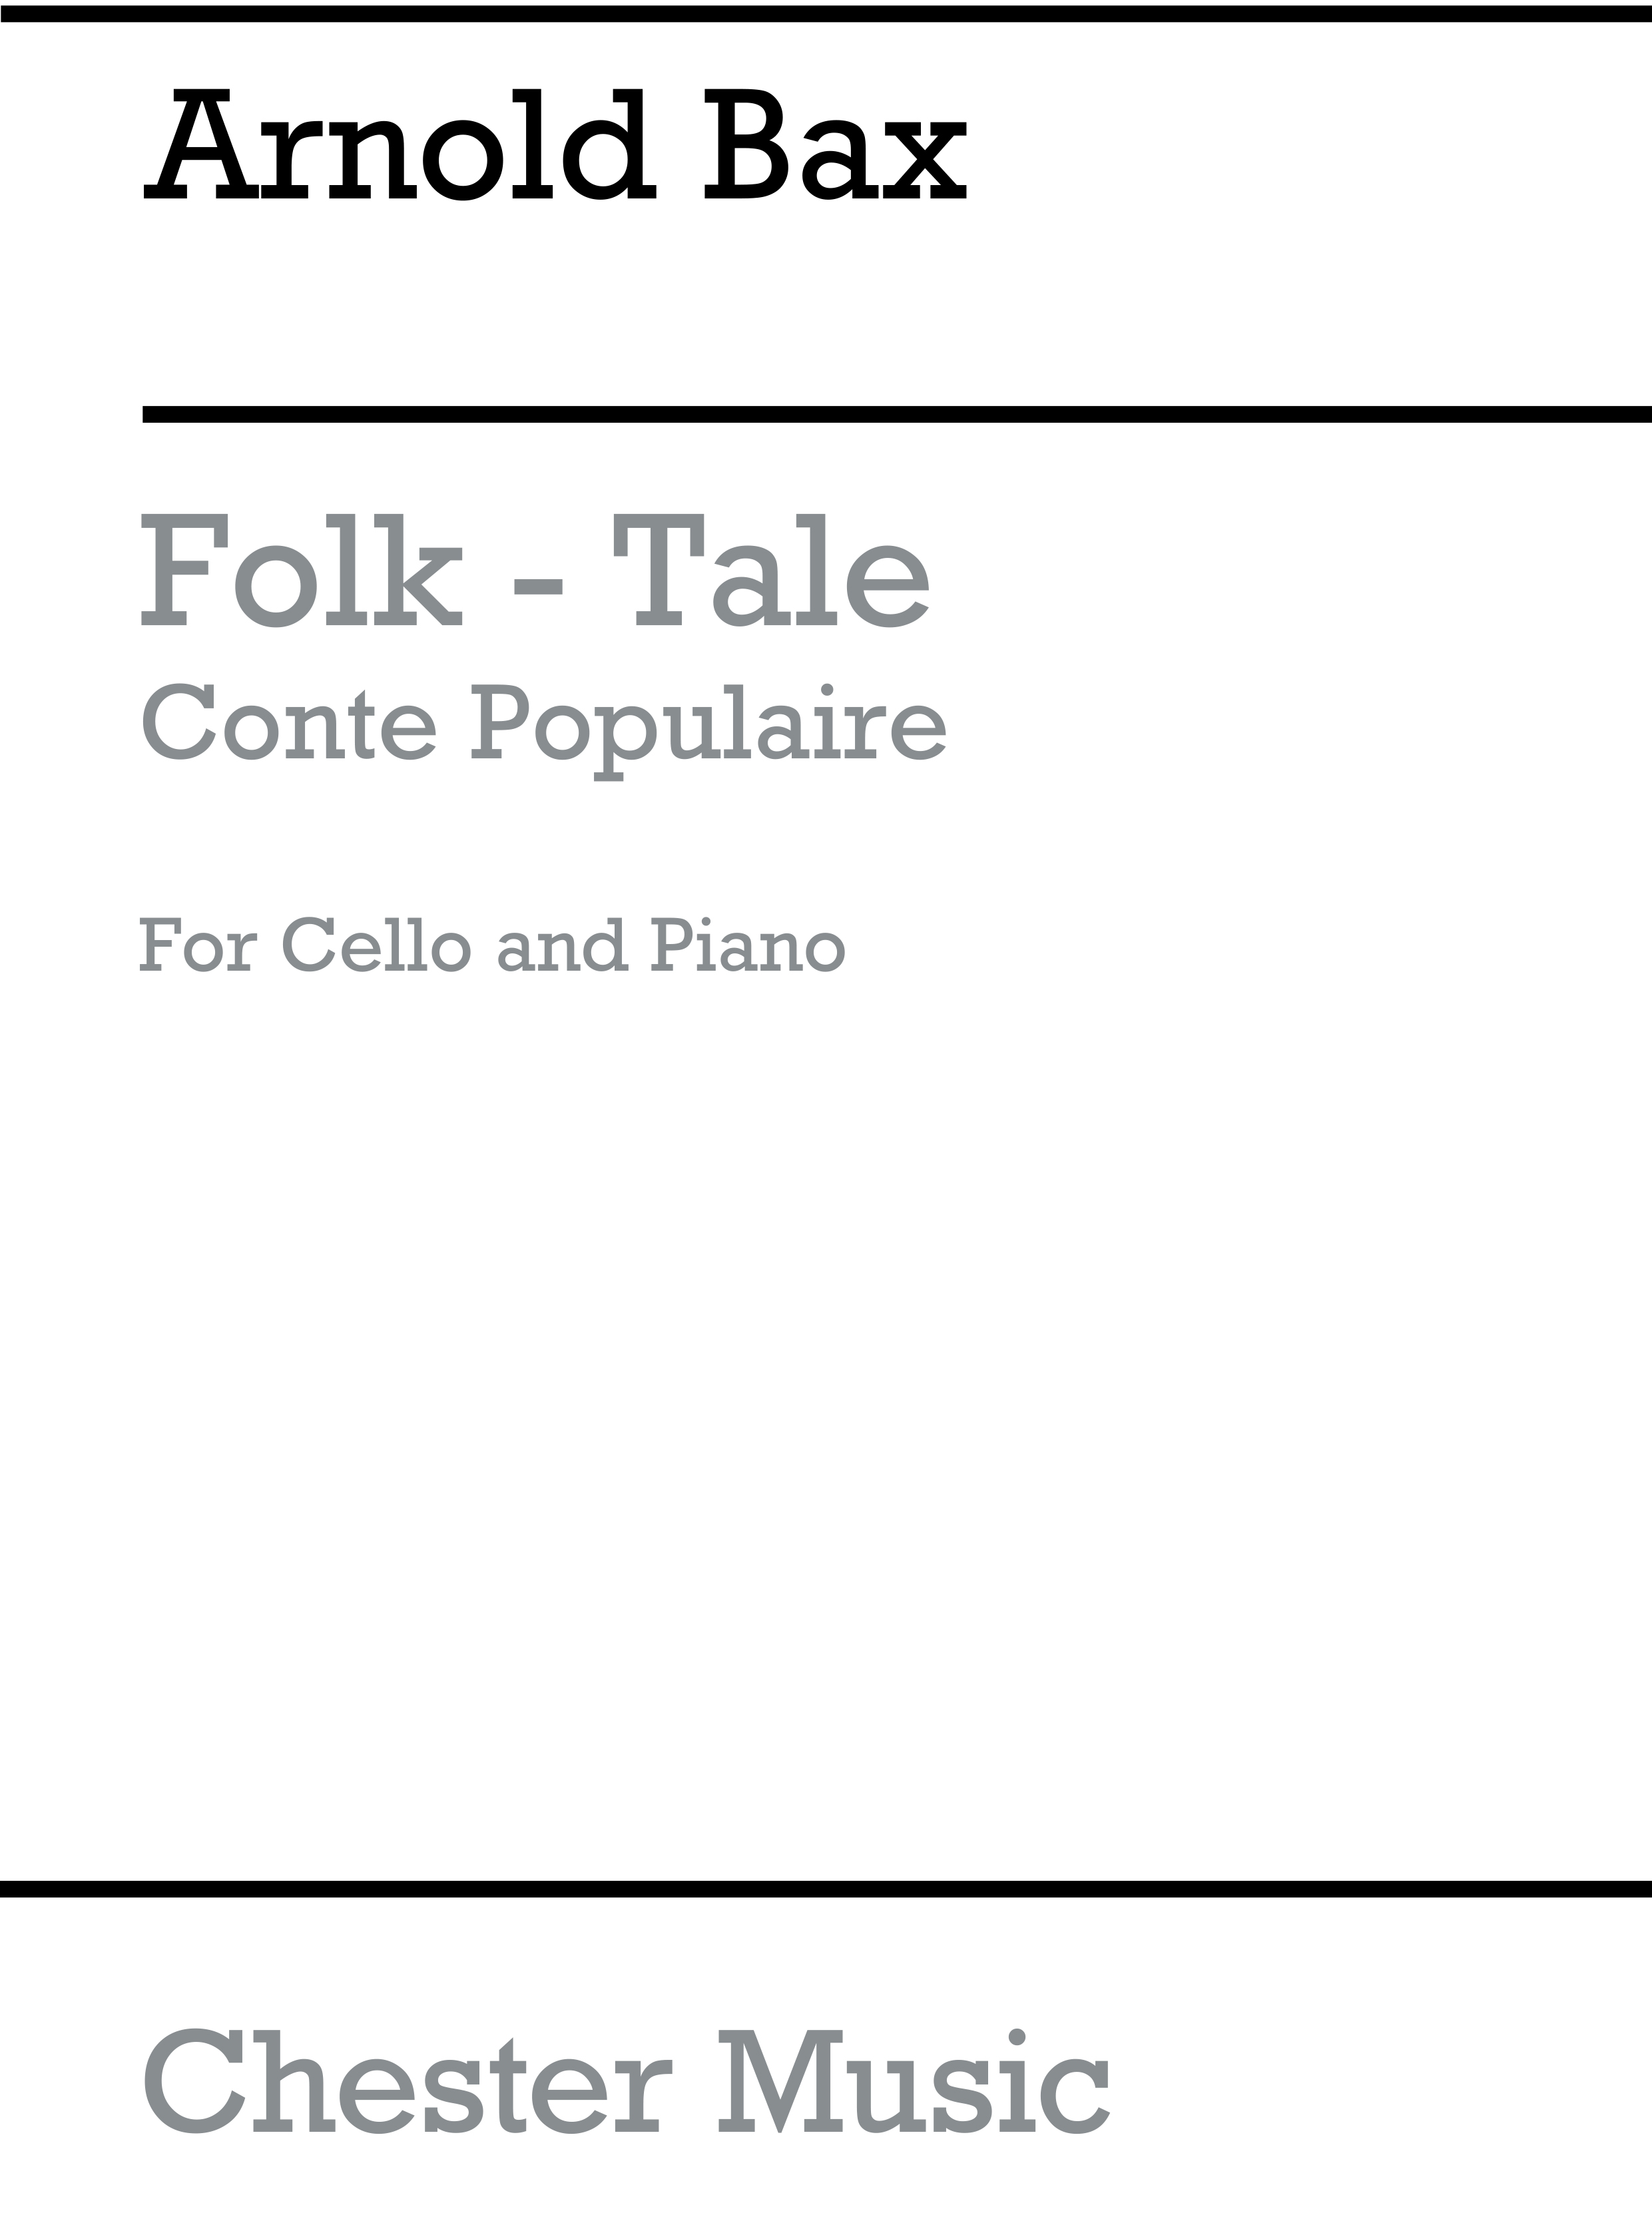 Arnold Bax: A Folk-Tale (Conte Populaire) for Cello And Piano: Cello: